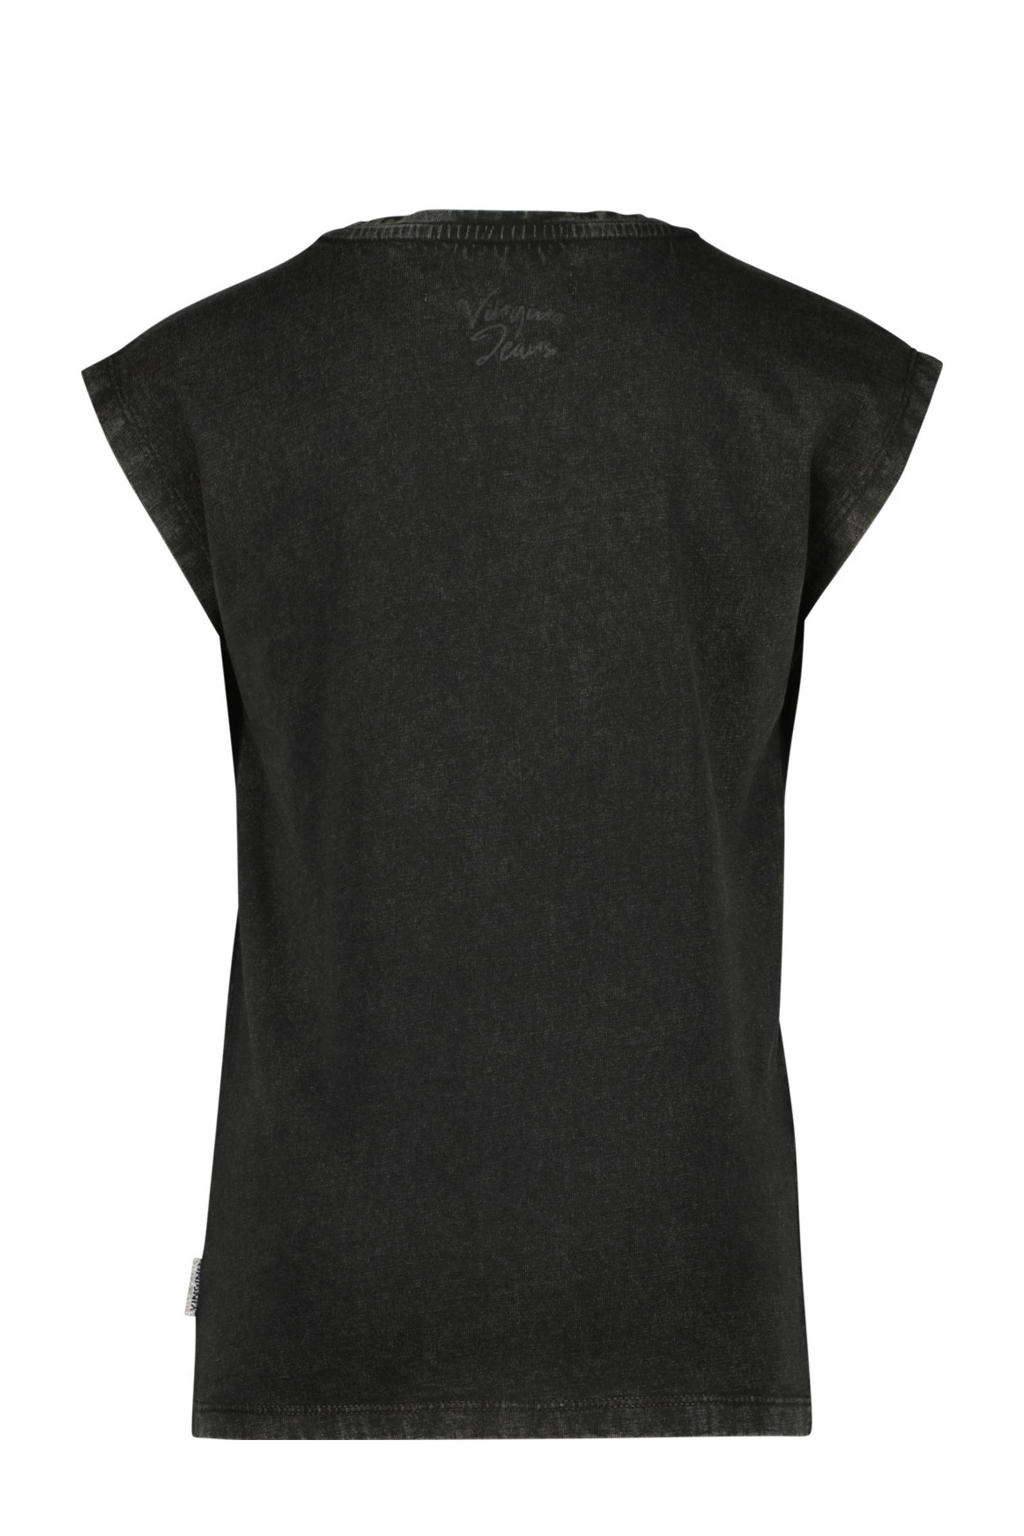 Zwarte meisjes Vingino T-shirt van katoen met printopdruk, kapmouwtjes en ronde hals